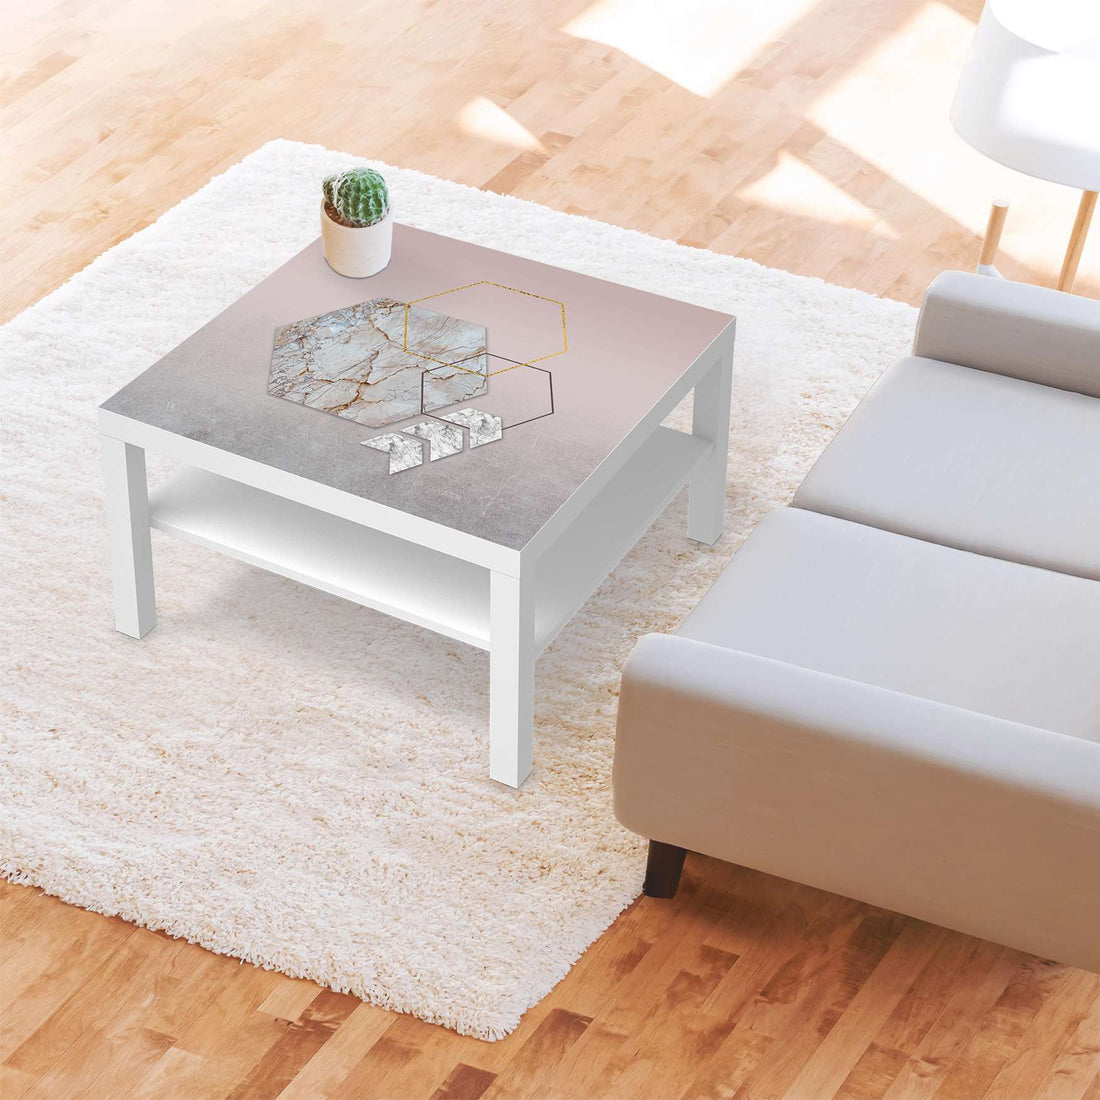 Selbstklebende Folie Hexagon - IKEA Lack Tisch 78x78 cm - Wohnzimmer